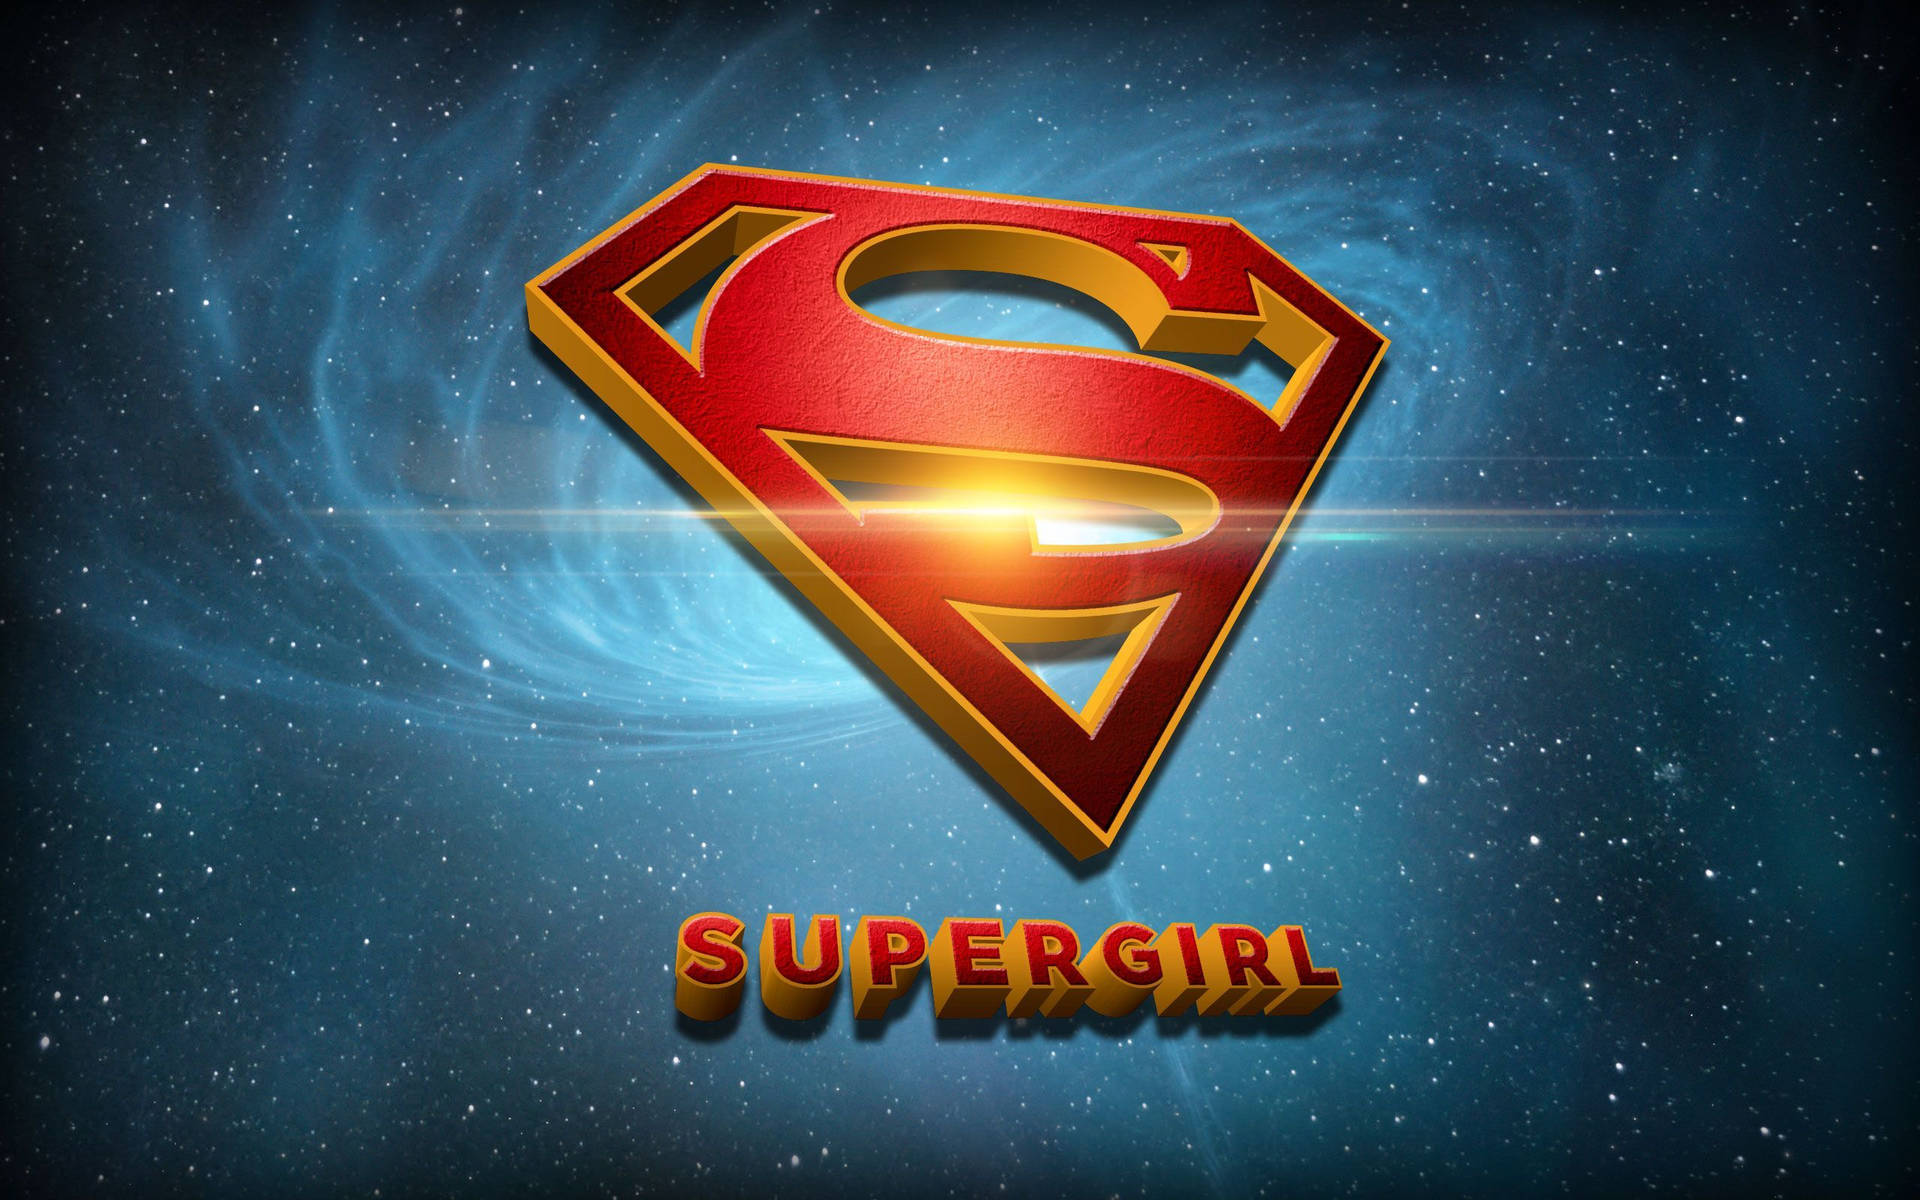 Supergirl Emblem Wallpaper